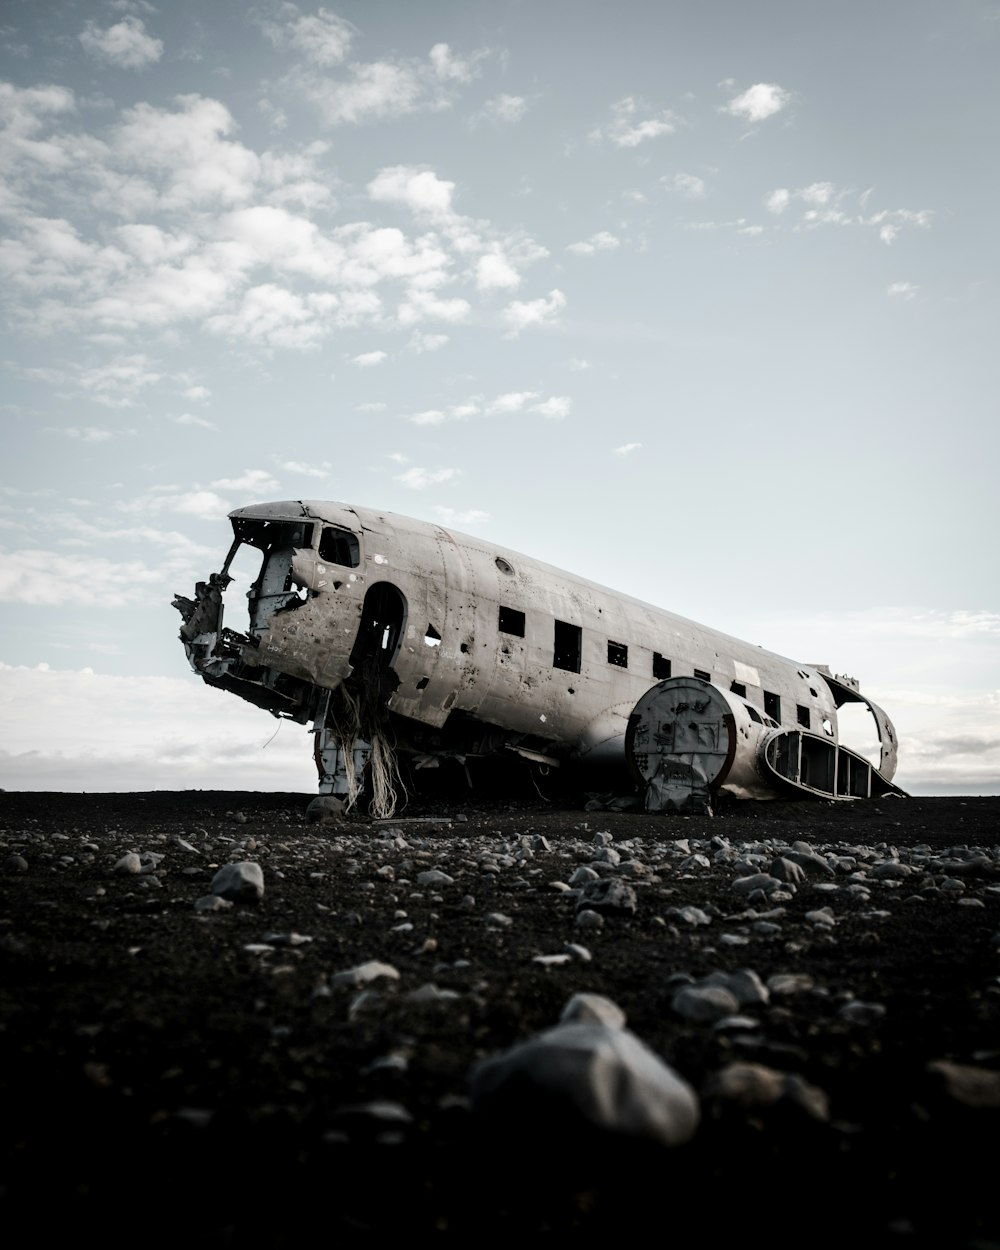 avión destrozado en suelo rocoso gris bajo cielo nublado soleado azul y blanco durante el día